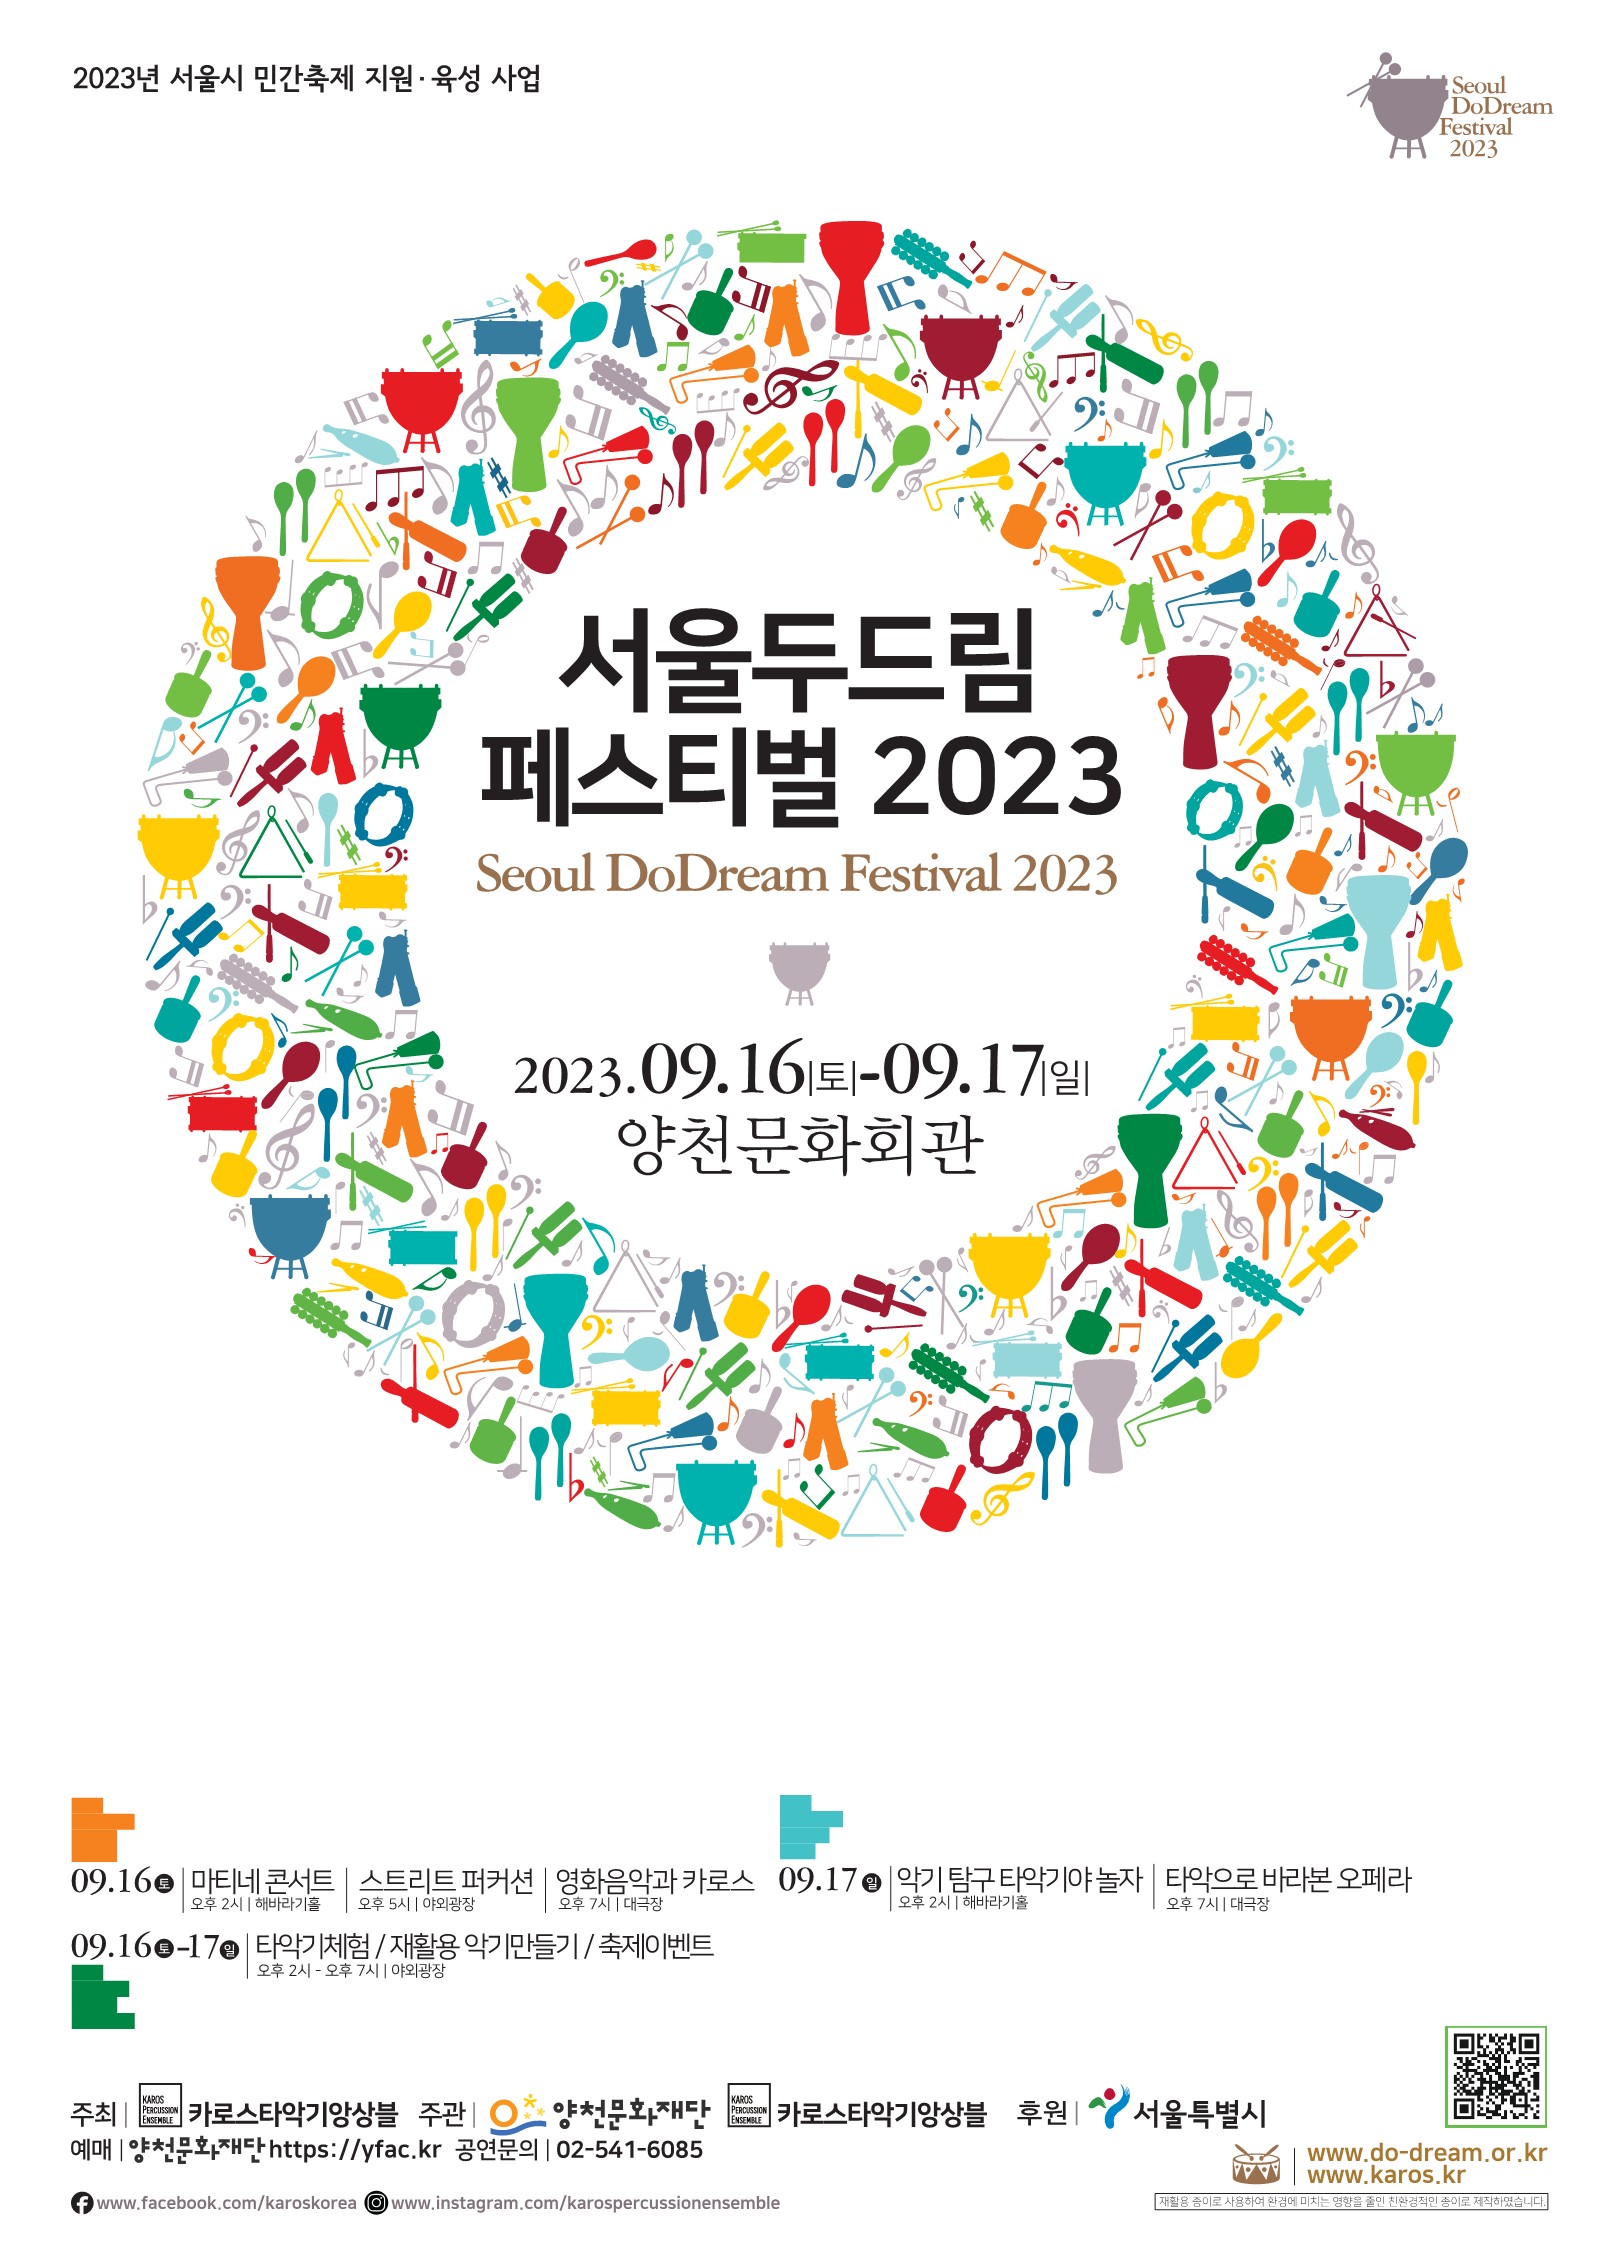 타악기 축제 <서울 두드림 페스티벌 2023> 관련이미지